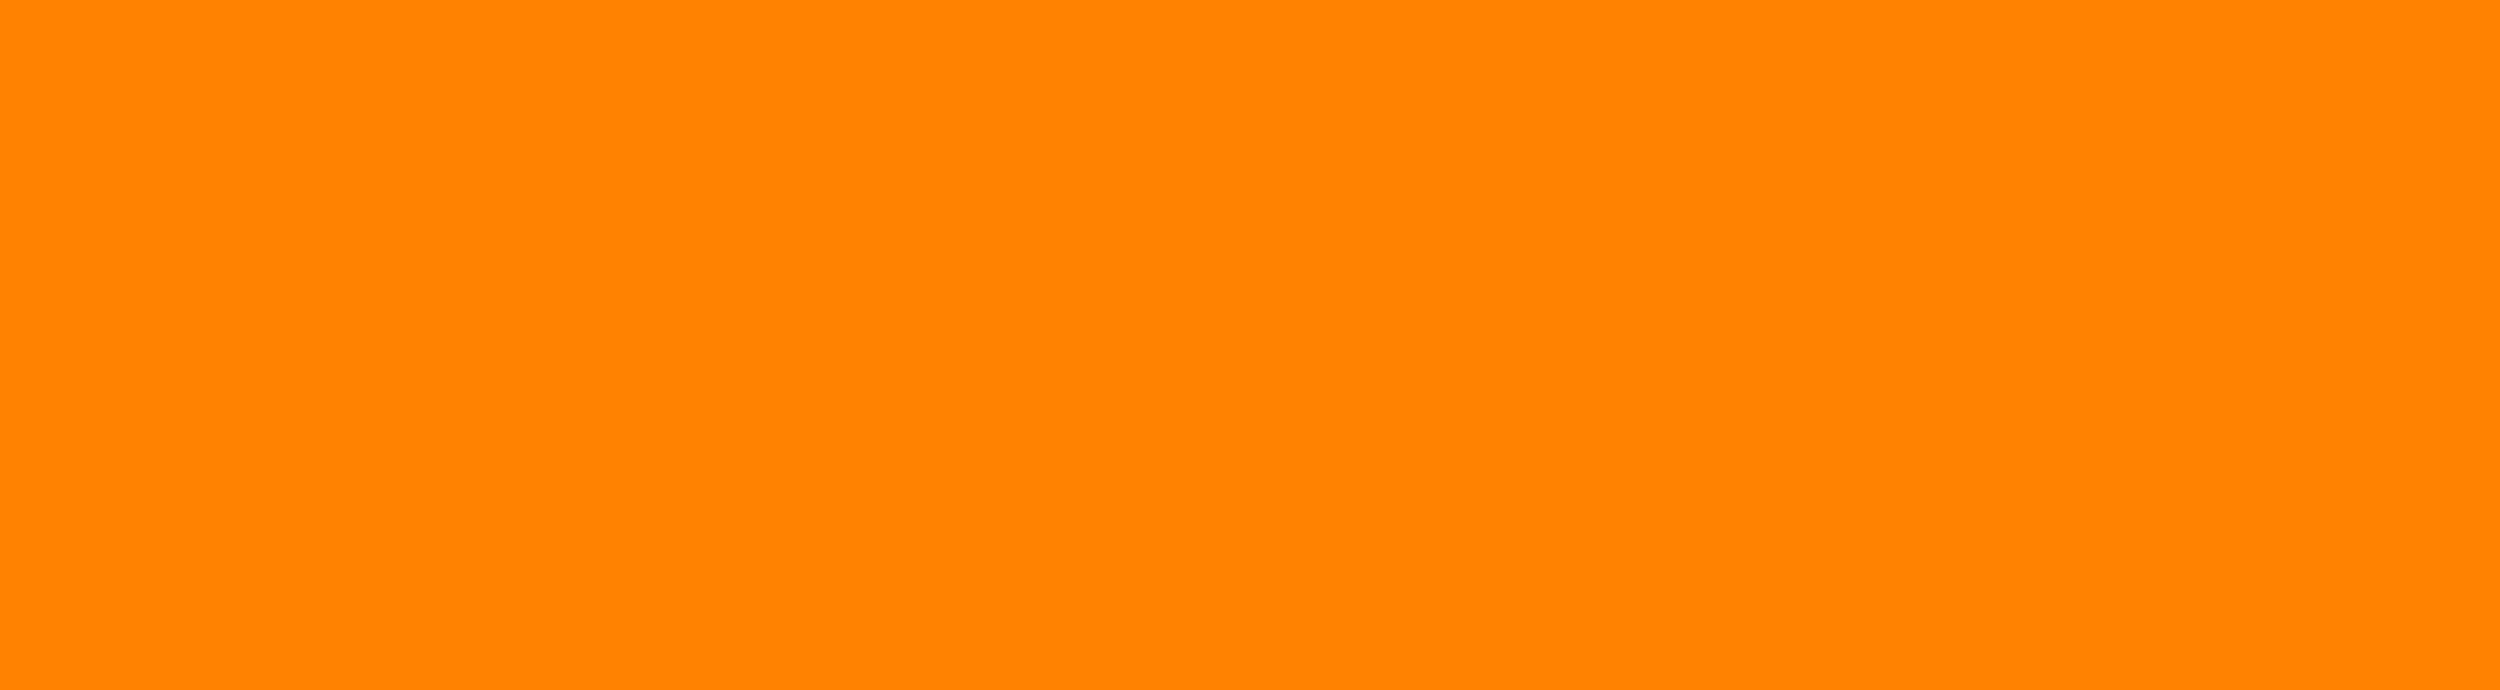 ПВХ плитка оранжевая. Оранжевая плитка для ванной. Плитка оранжевая мелкого формата. Оранжевая плитка 25x33 оранжевый цвет. 5 28 88